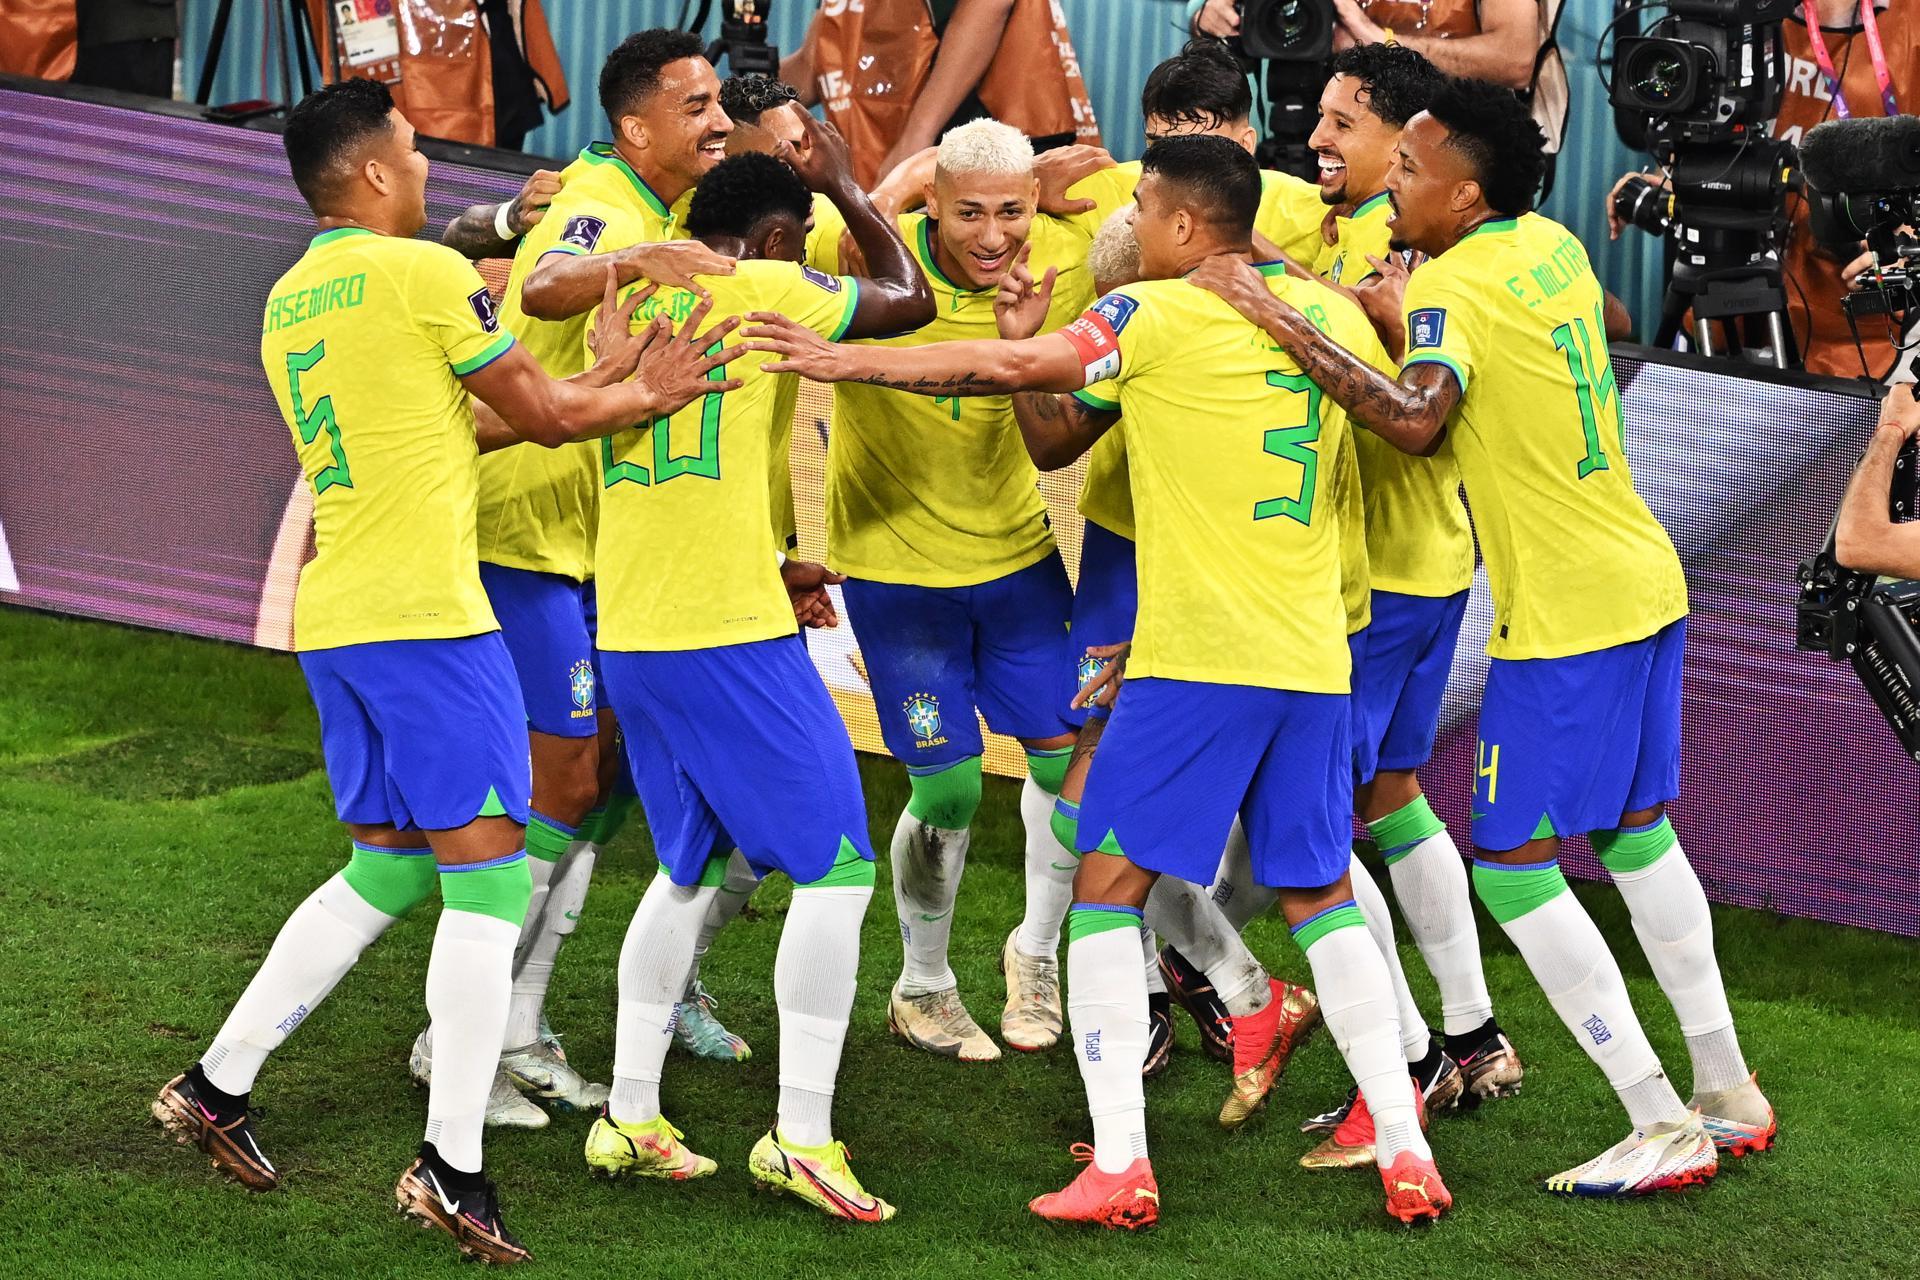 PRÉ-JOGO BRASIL x COREIA DO SUL  Copa do Mundo 2022 - Catar 